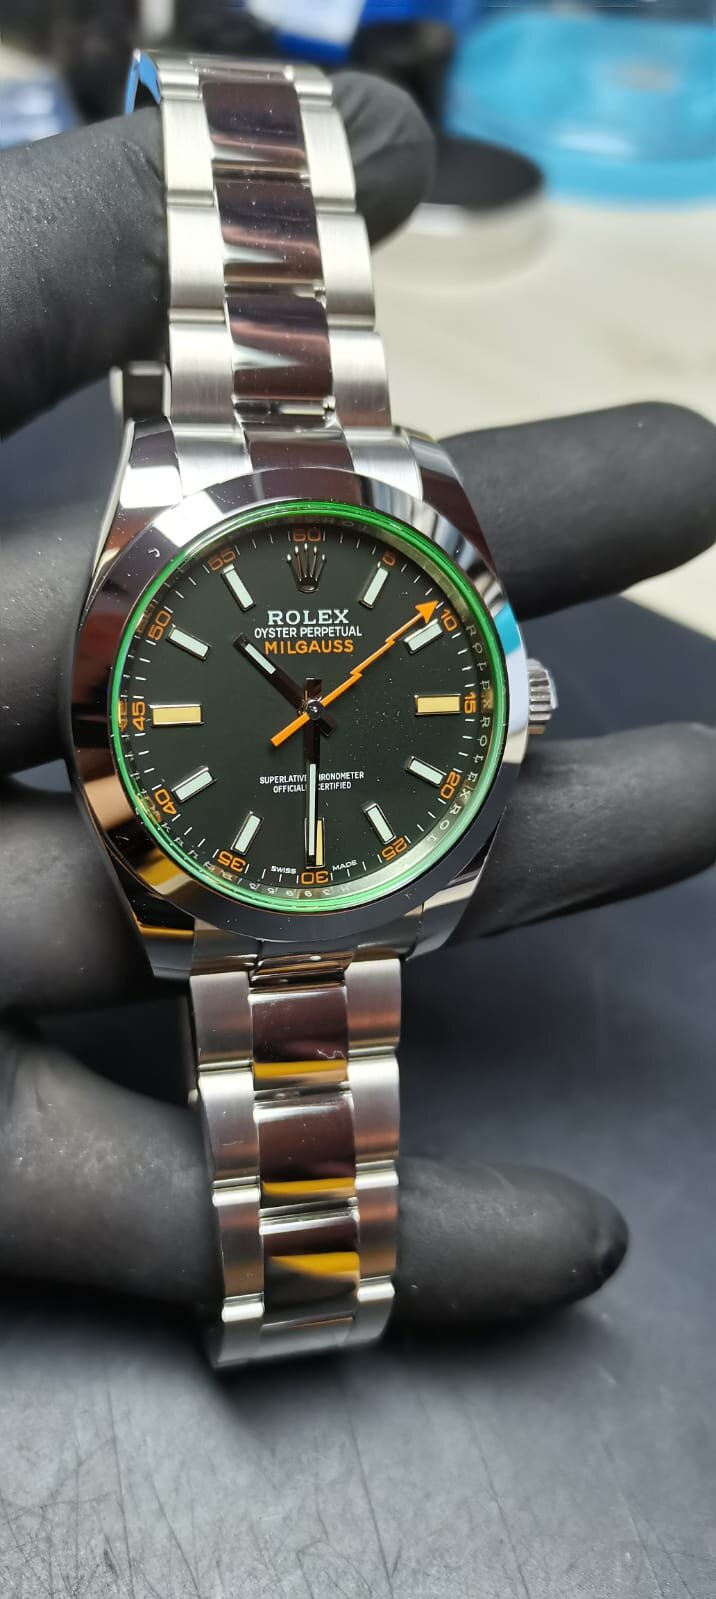 Rolex Milgauss watch 116400 2380 V9H39953 1329055201 Black dial green glass.jpeg